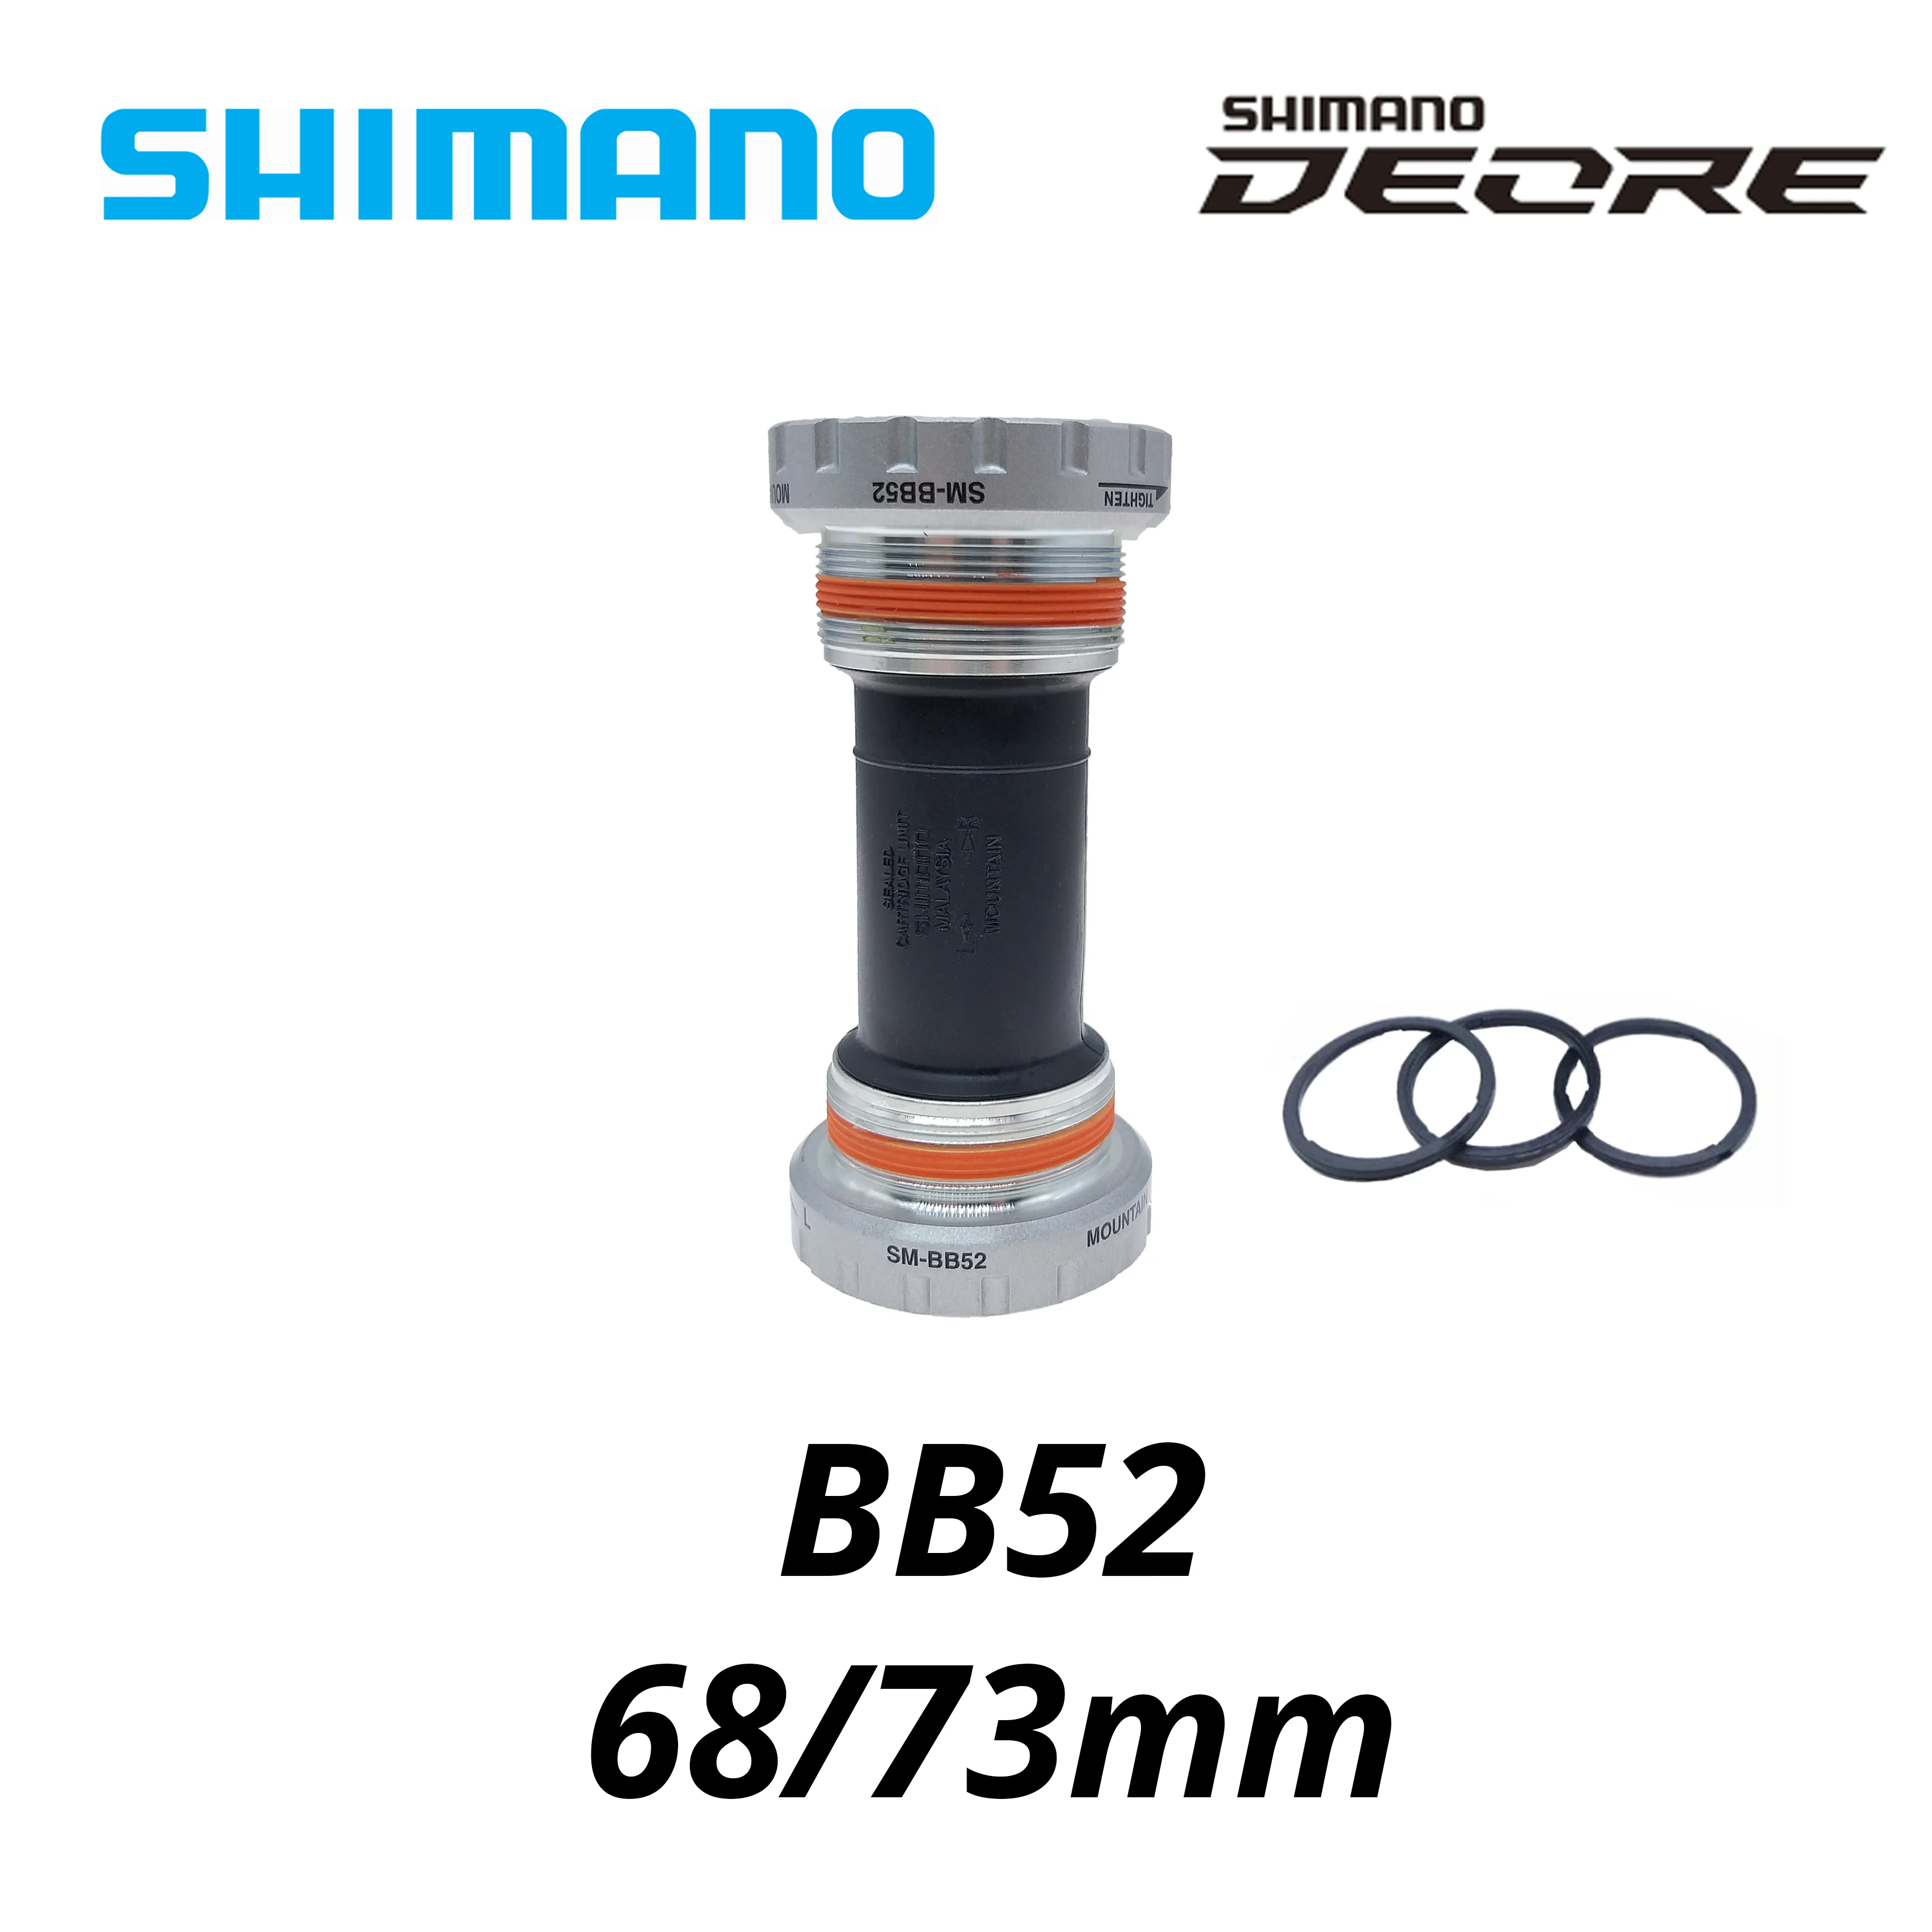 Shimano Deore SM-BB52 MT500 XT MT800 Hollowtech Mountain Bike Bottom  Bracket 68 73 MM m4050 m6000 m4100 m7000 m8000 Chainwheel